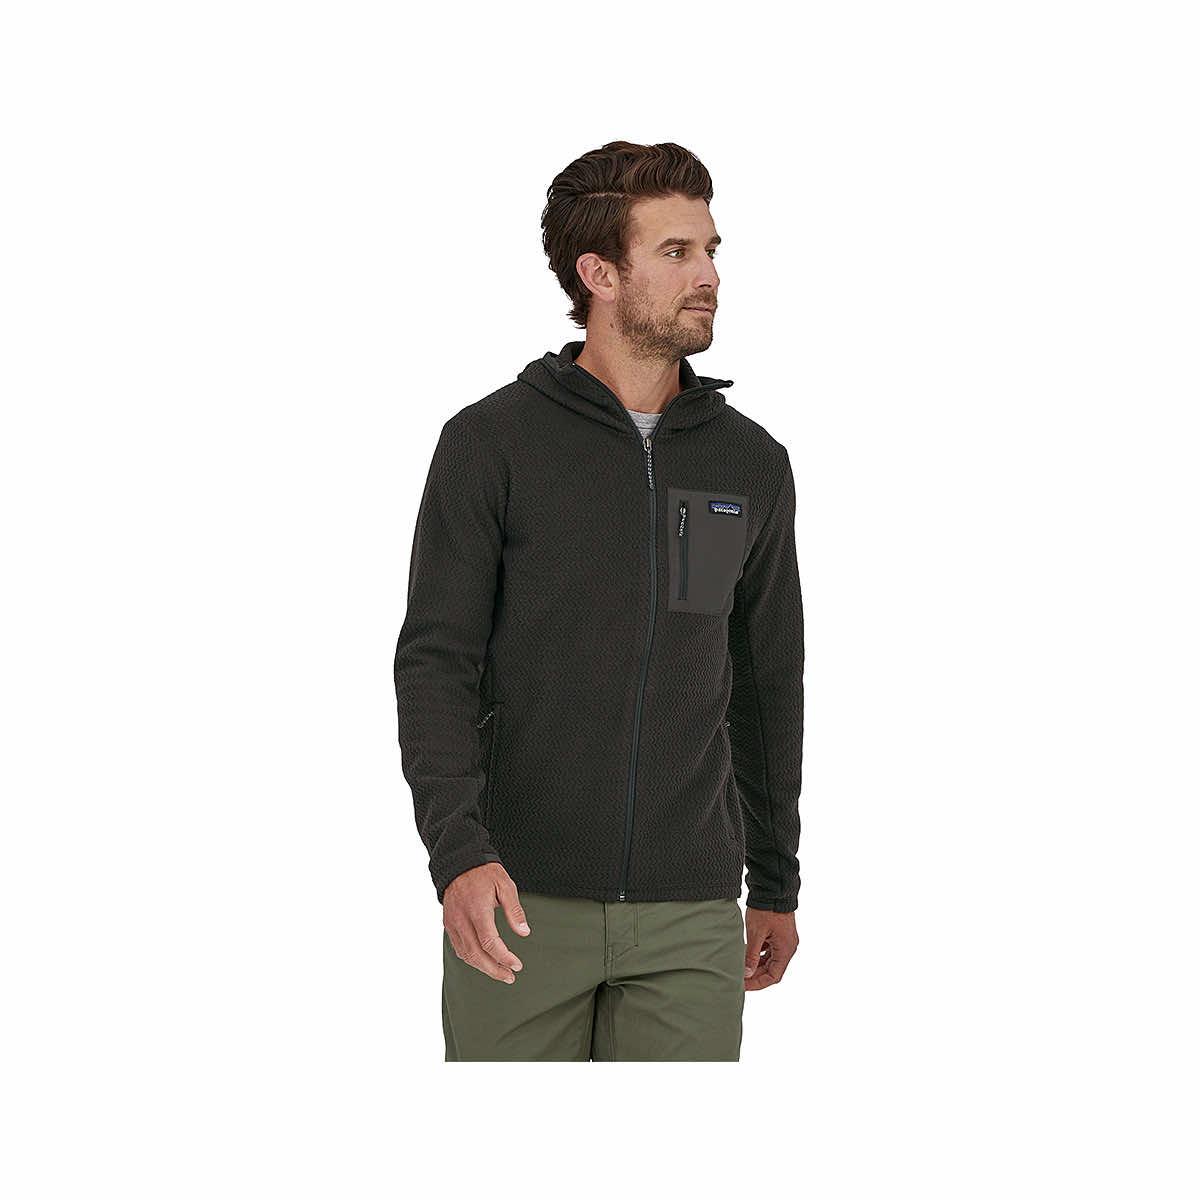 Mast General Store  Men's Better Sweater Fleece Jacket